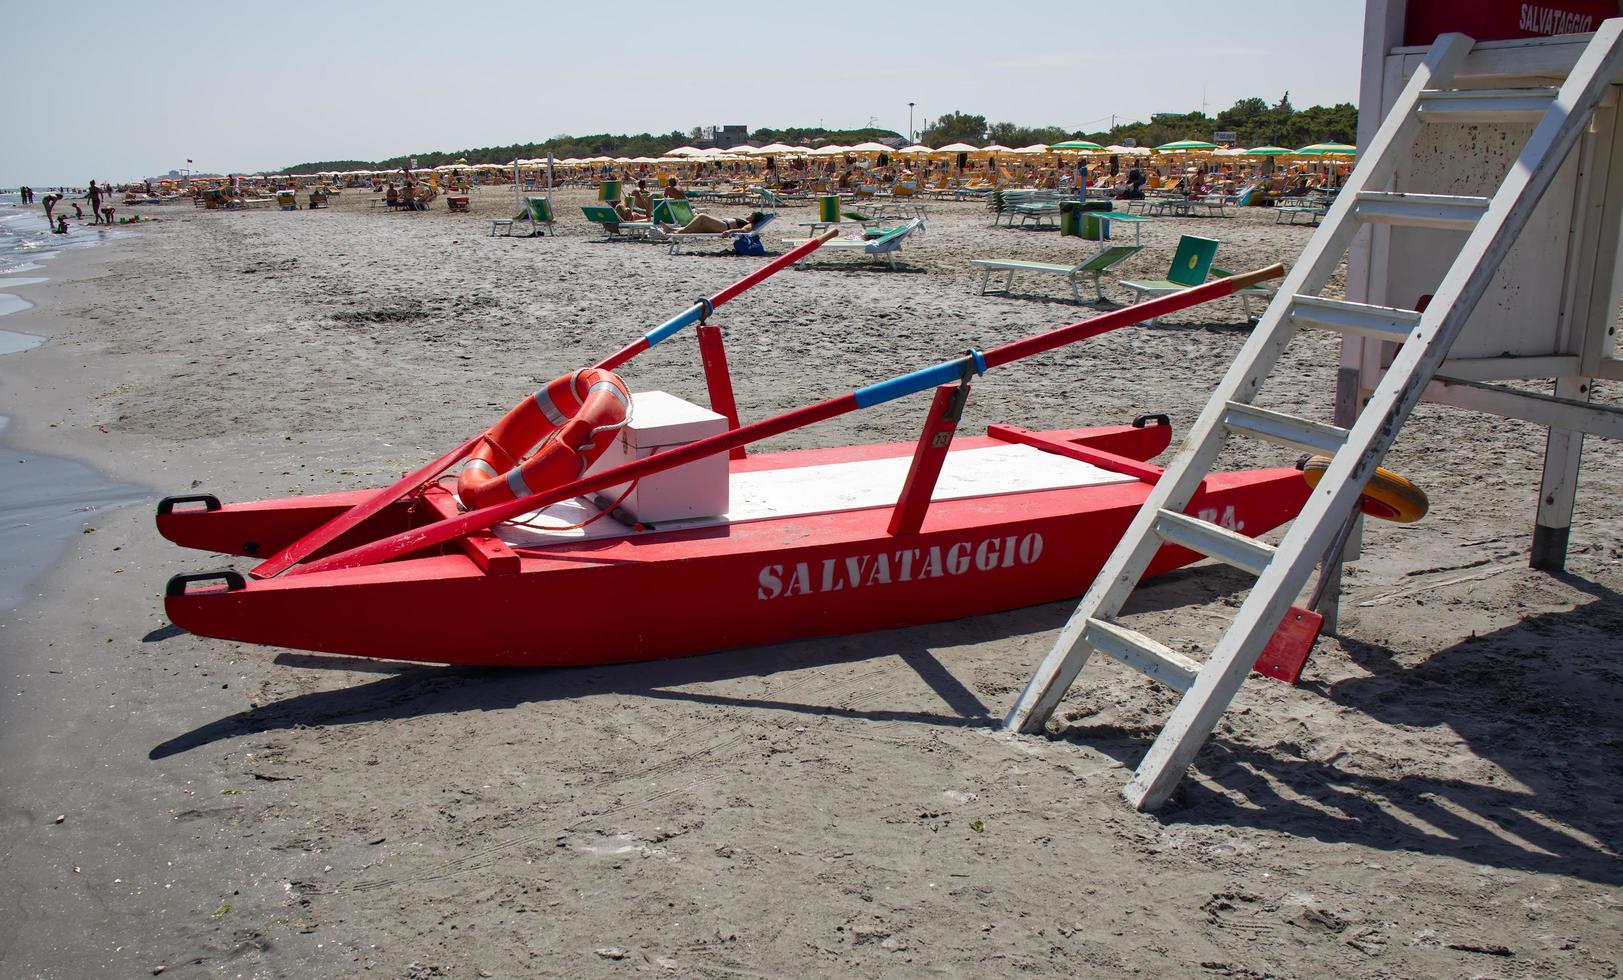 bateau de sauvetage rouge sauveteur. le mot salvataggio, sauvetage écrit sur le bateau. riviera romagnole, italie photo